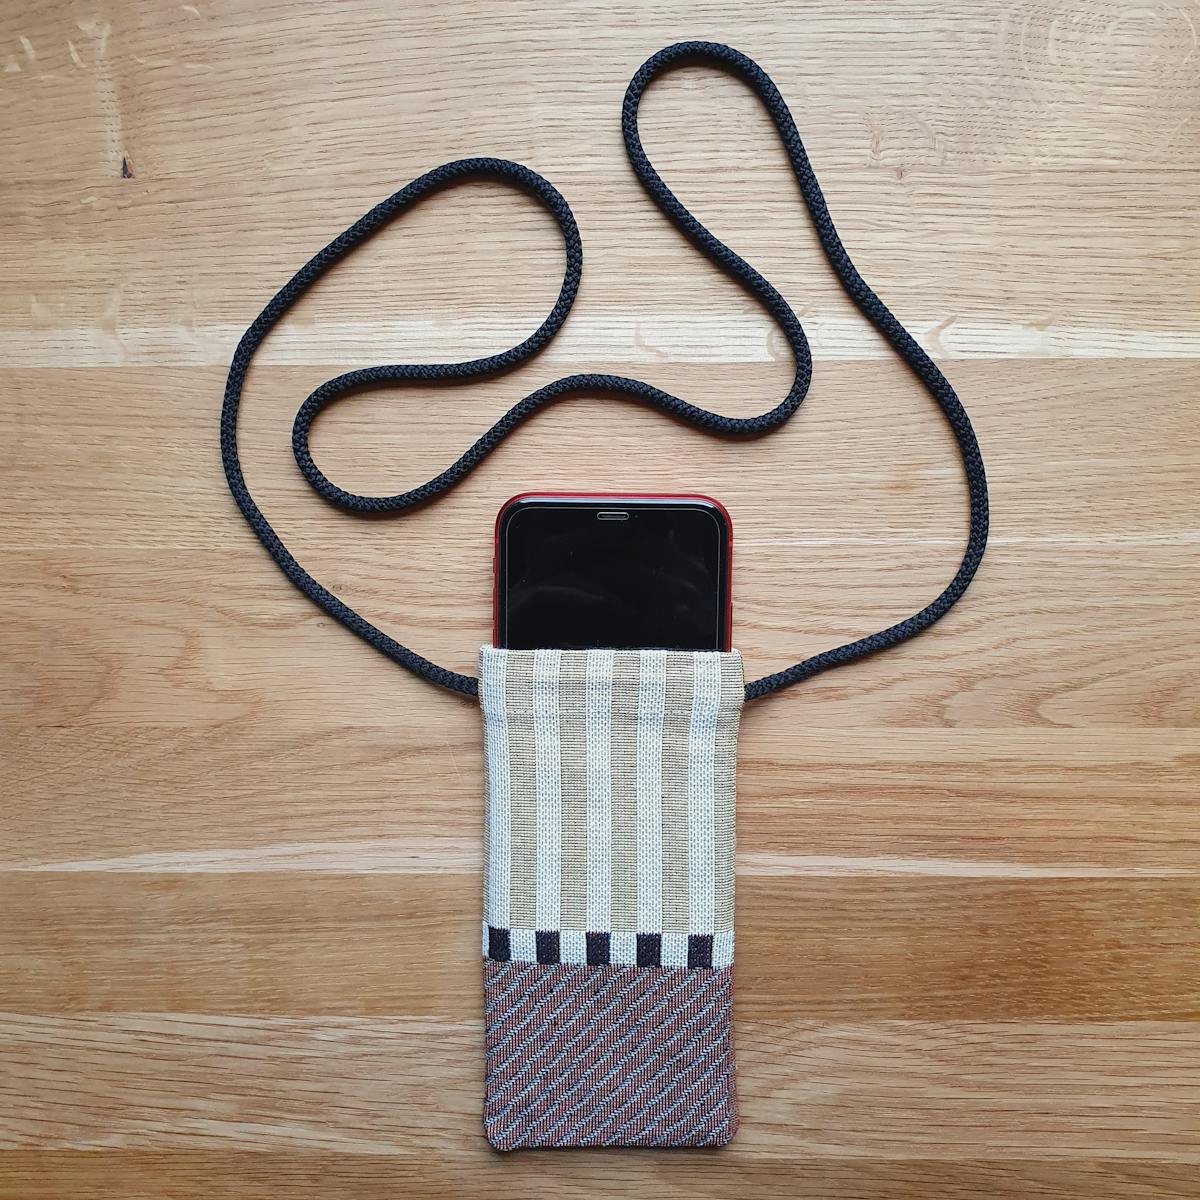  funda para iPhone hecha a mano en tela tejida a rayas con cordón para el cuello y el teléfono guardado en el interior